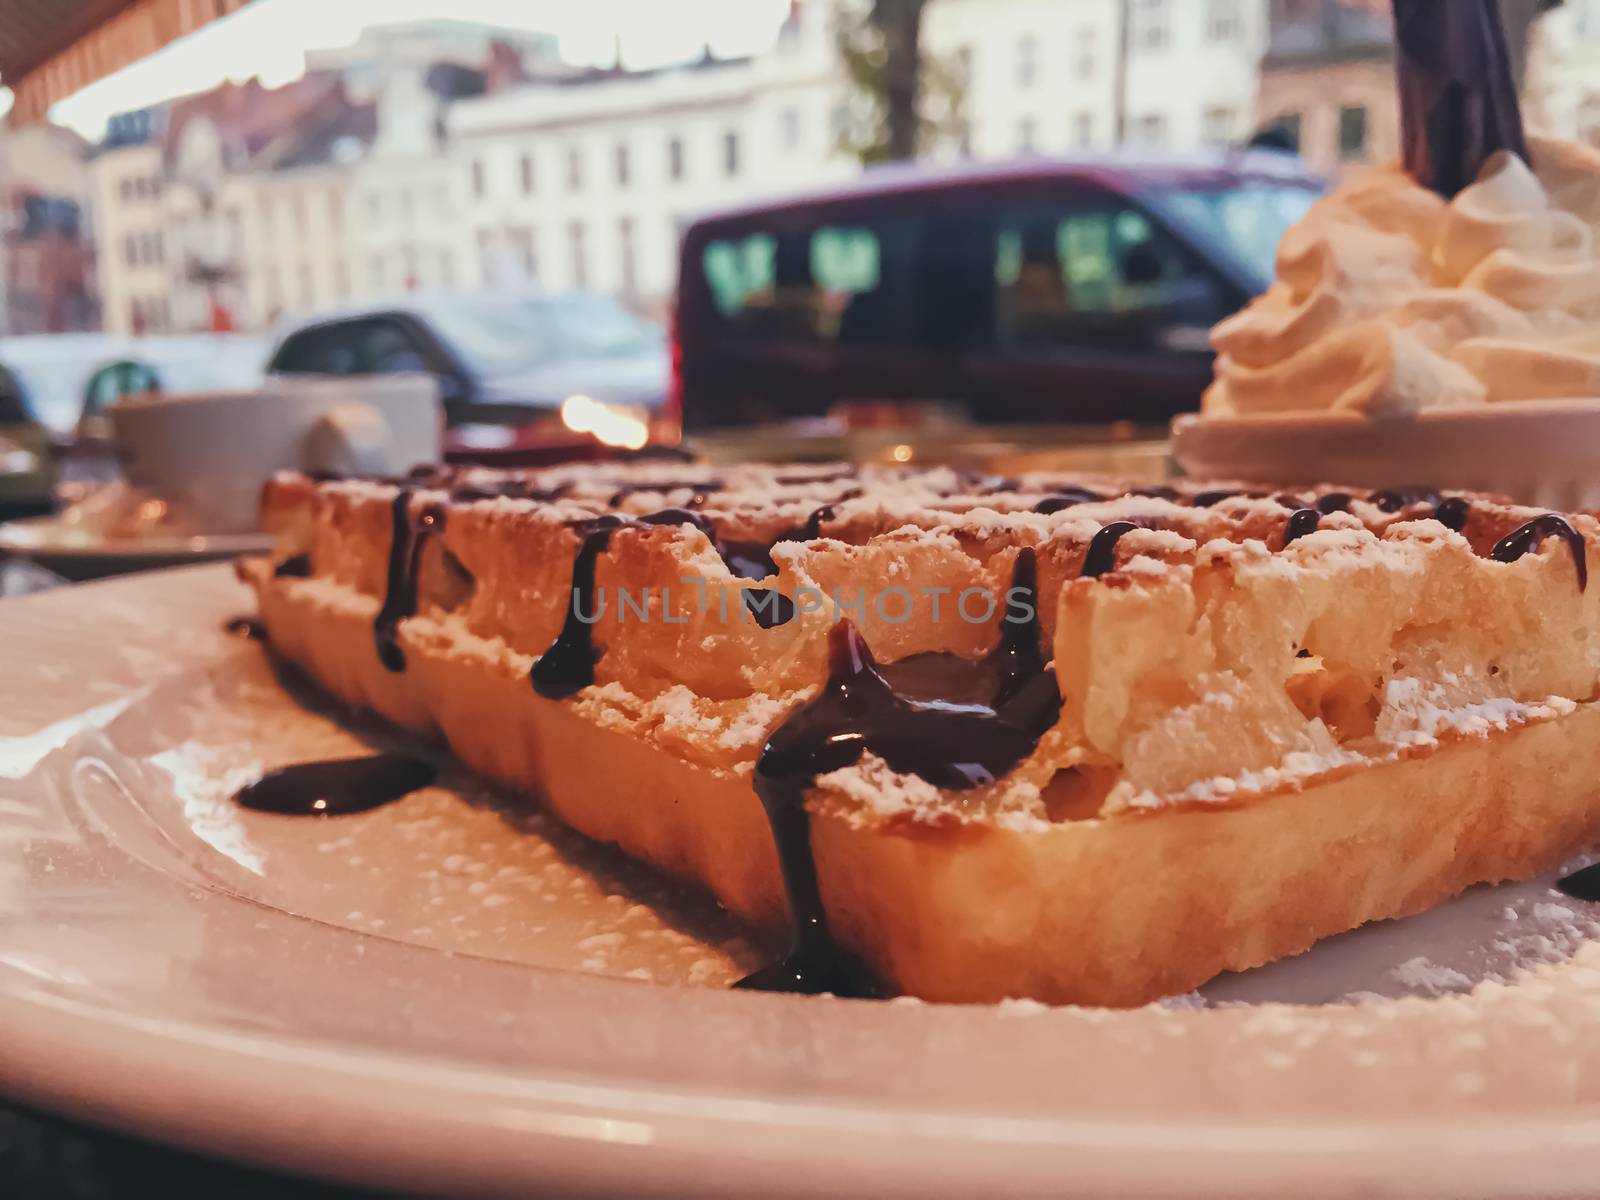 Belgian waffles in a restaurant in Brussels